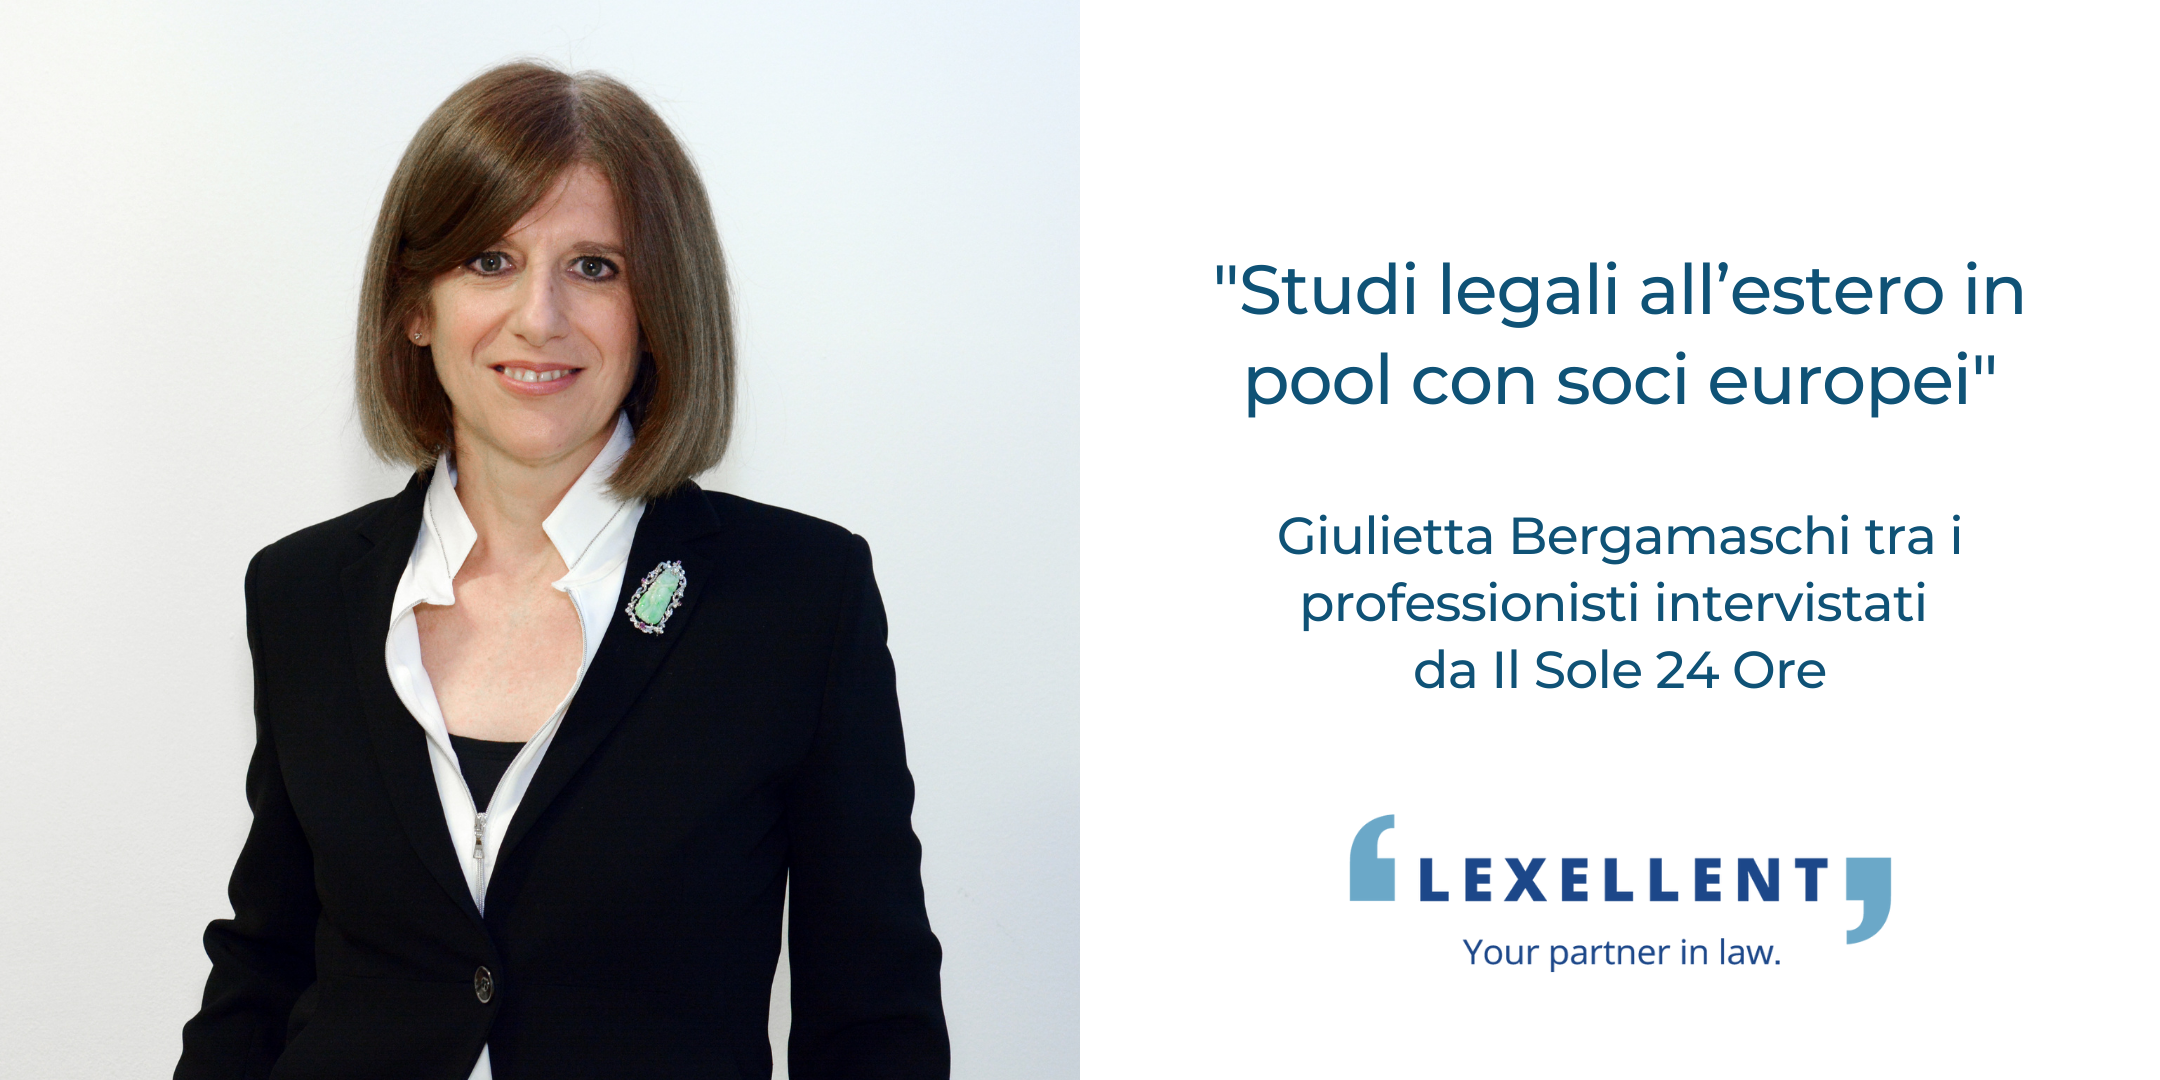 “Studi legali all’estero in pool con soci europei”: Giulietta Bergamaschi intervistata da Il Sole 24 Ore